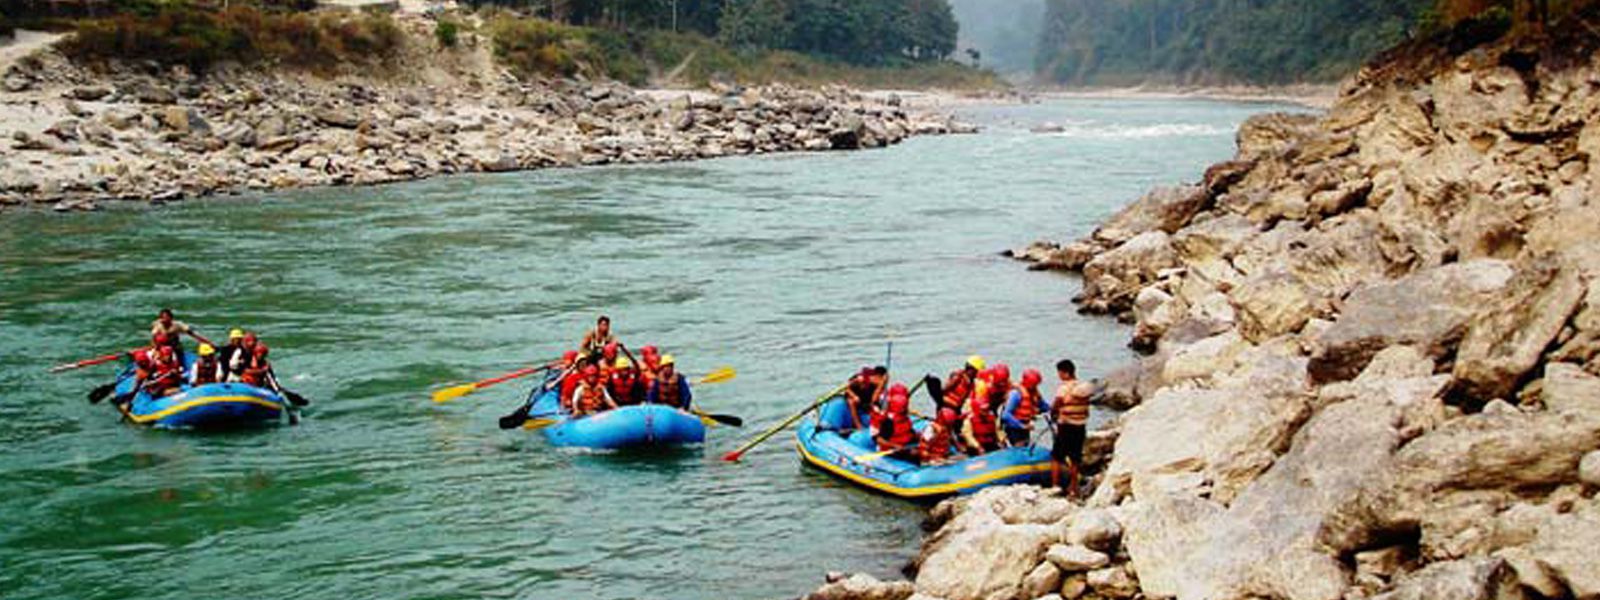 Rafting in Nepal.